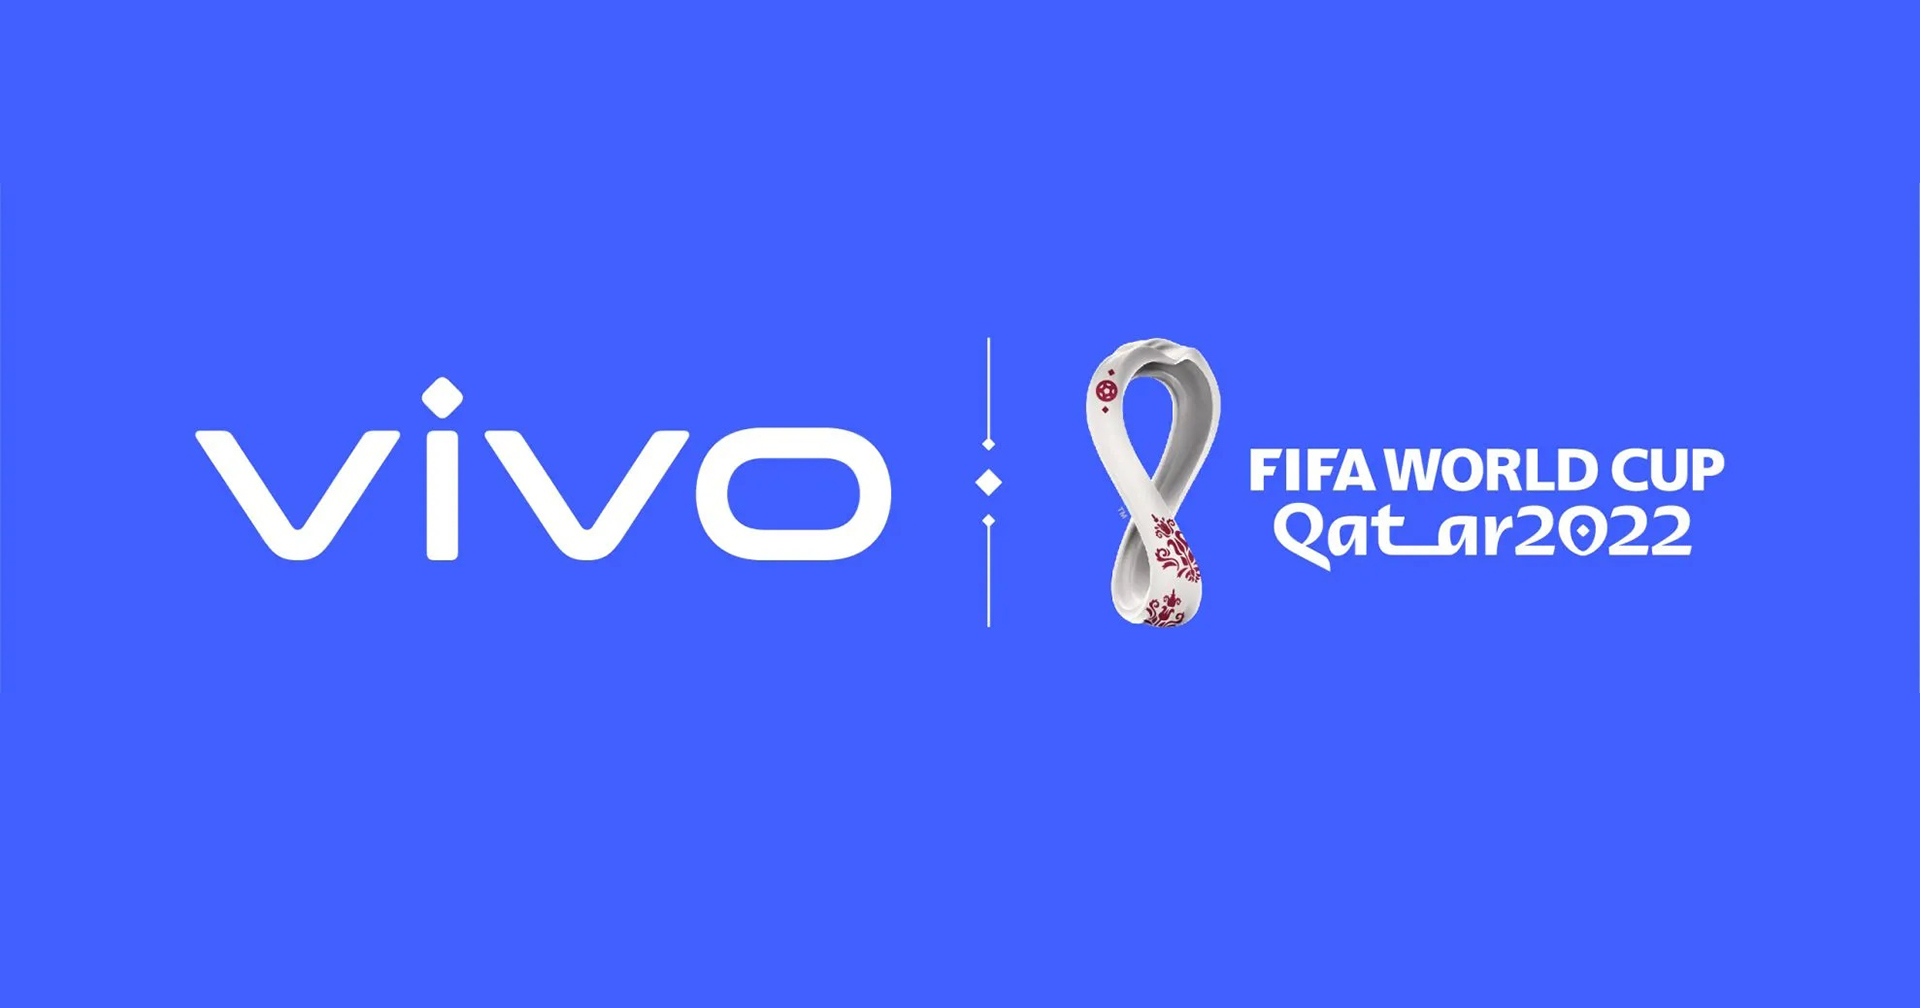 Vivo ได้เป็นผู้สนับสนุน FIFA World Cup Qatar 2022 อย่างเป็นทางการ